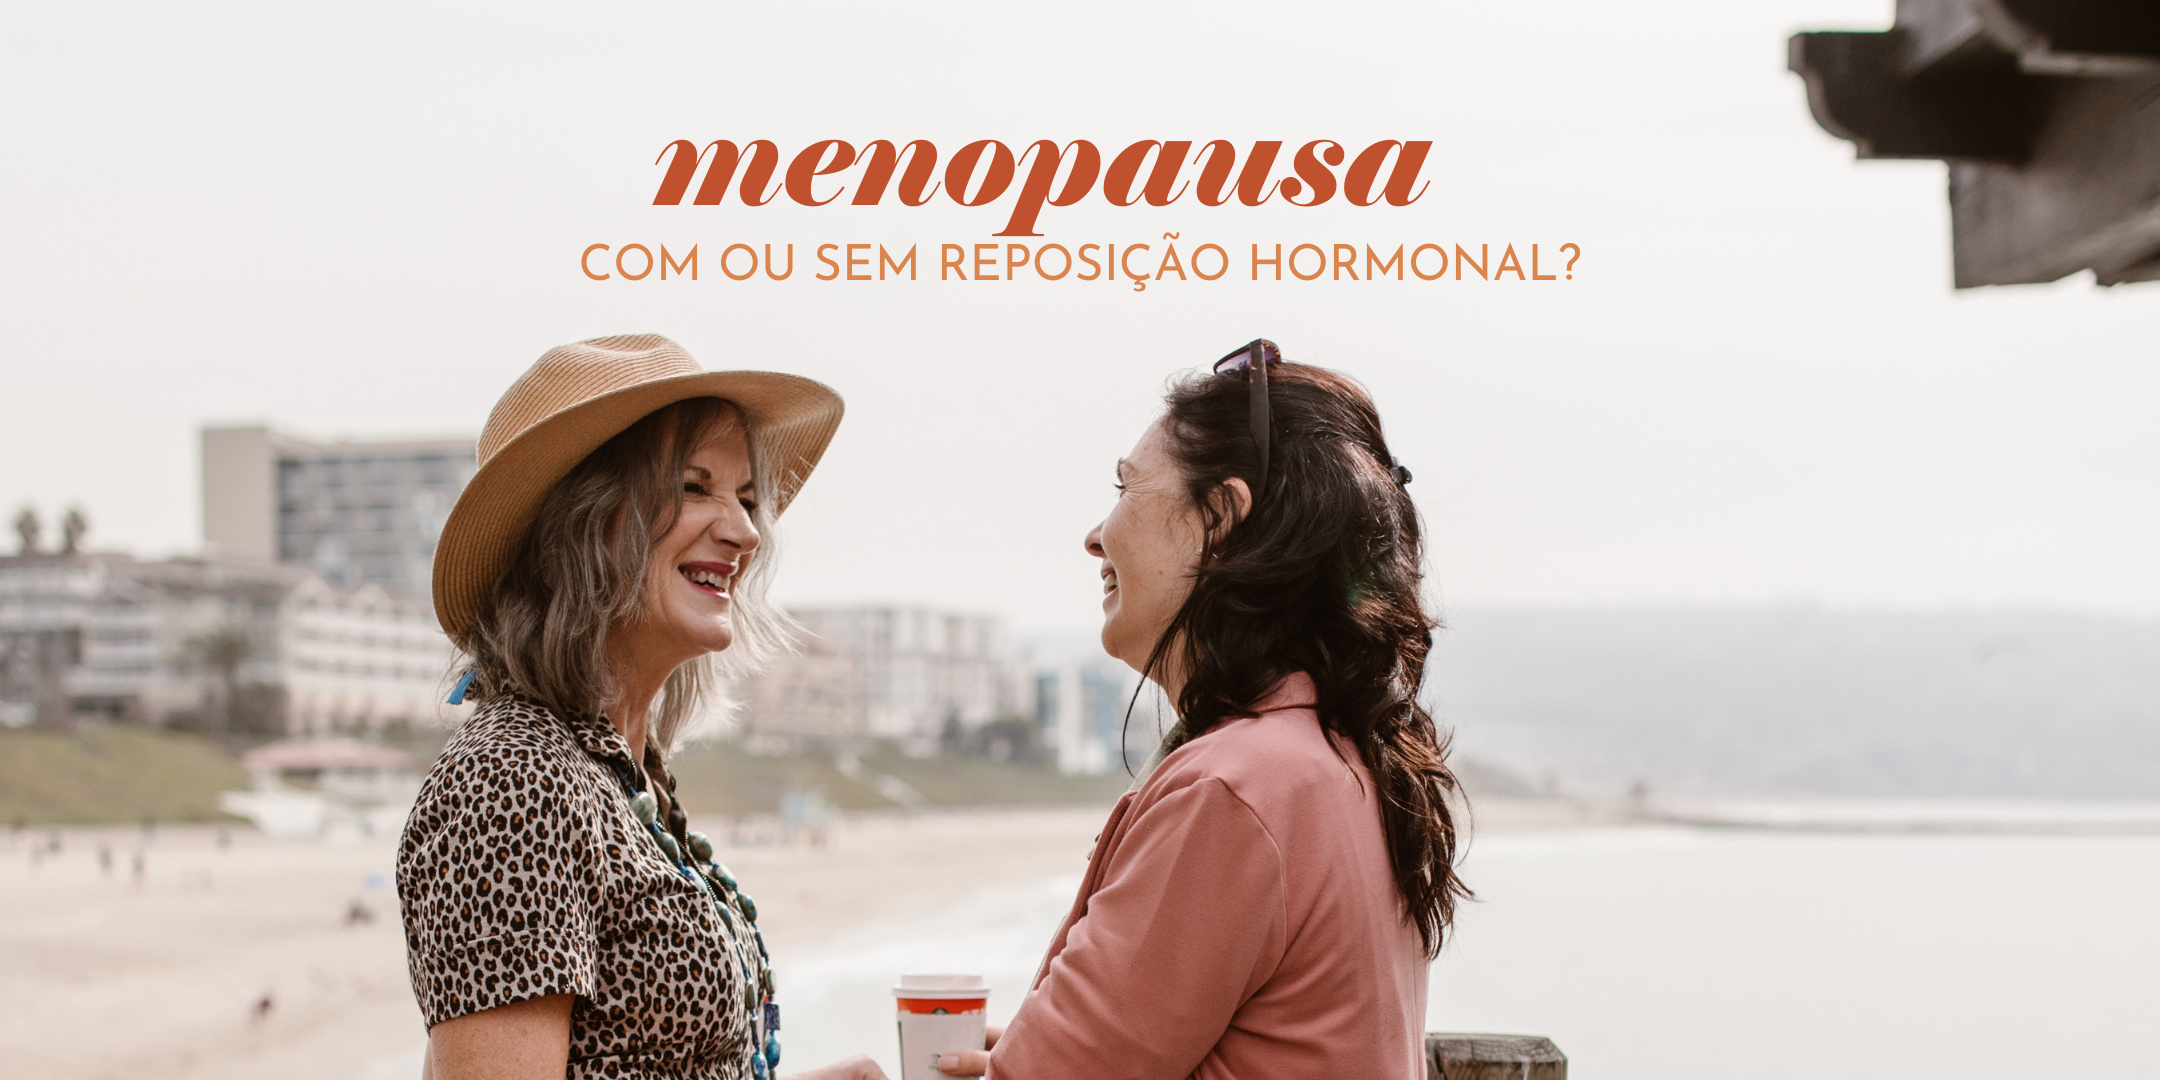 Menopausa com ou sem reposição hormonal?